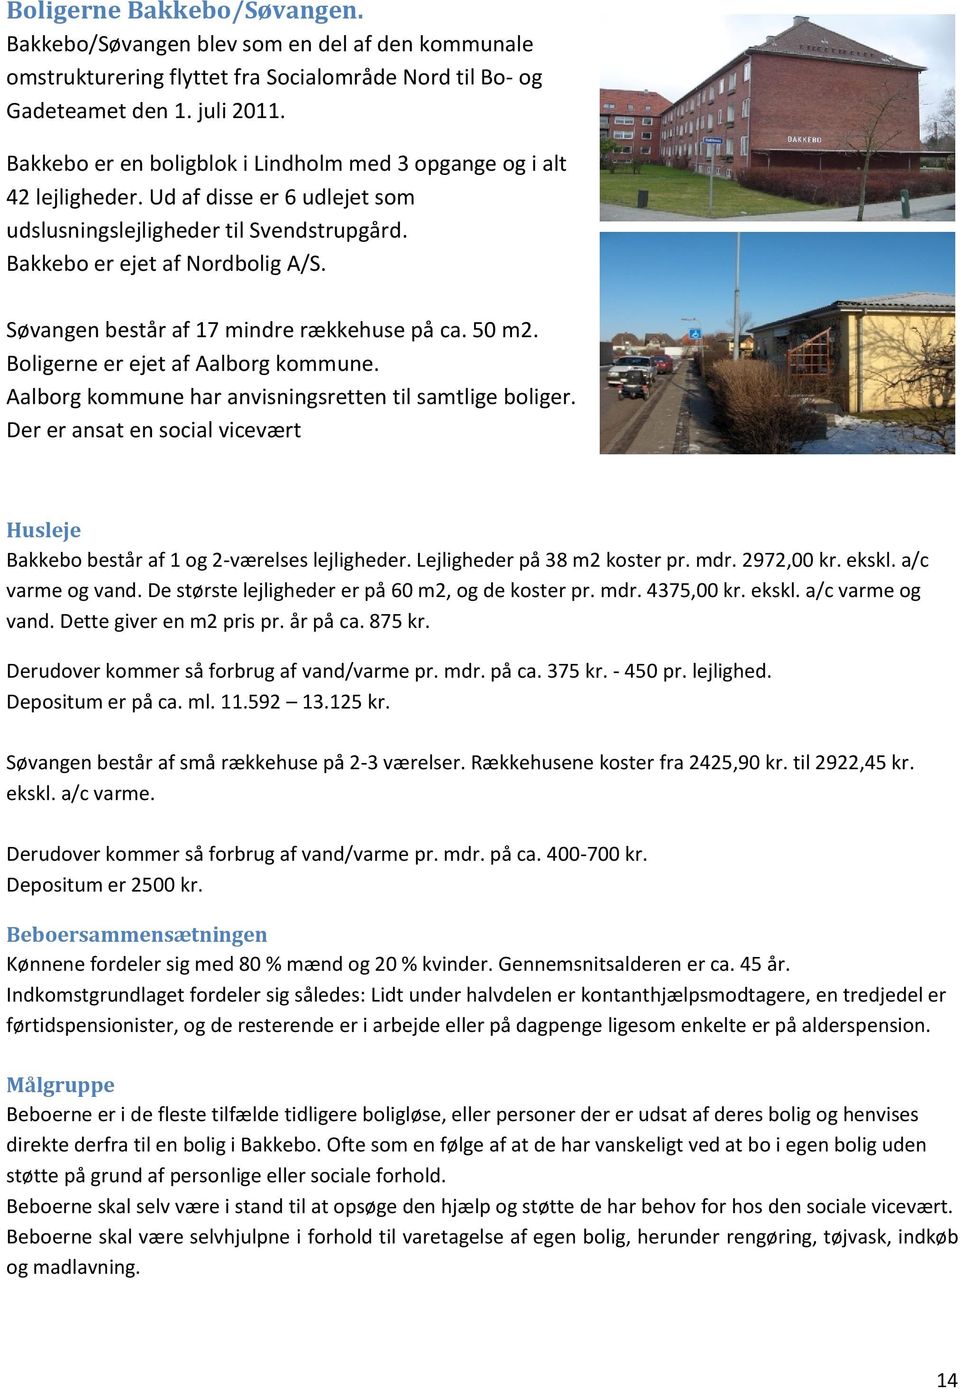 Søvangen består af 17 mindre rækkehuse på ca. 50 m2. Boligerne er ejet af Aalborg kommune. Aalborg kommune har anvisningsretten til samtlige boliger.